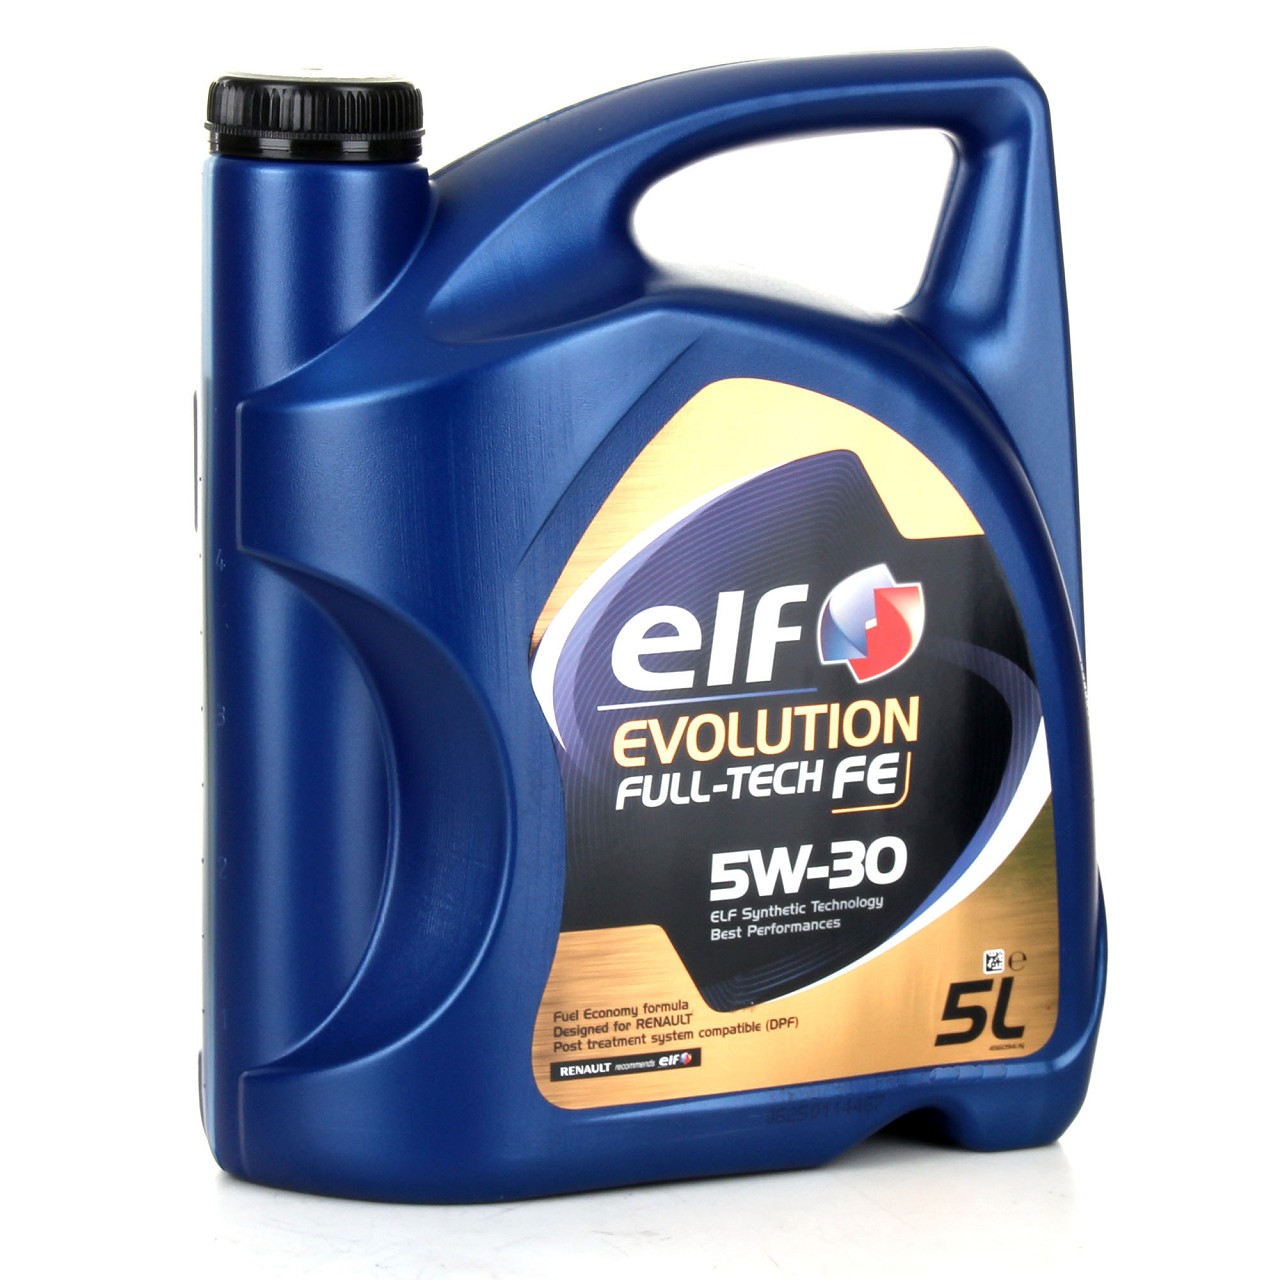 6L elf Evolution Full-Tech FE 5W-30 Motoröl ORIGINAL Renault Ölfilter 8200362442